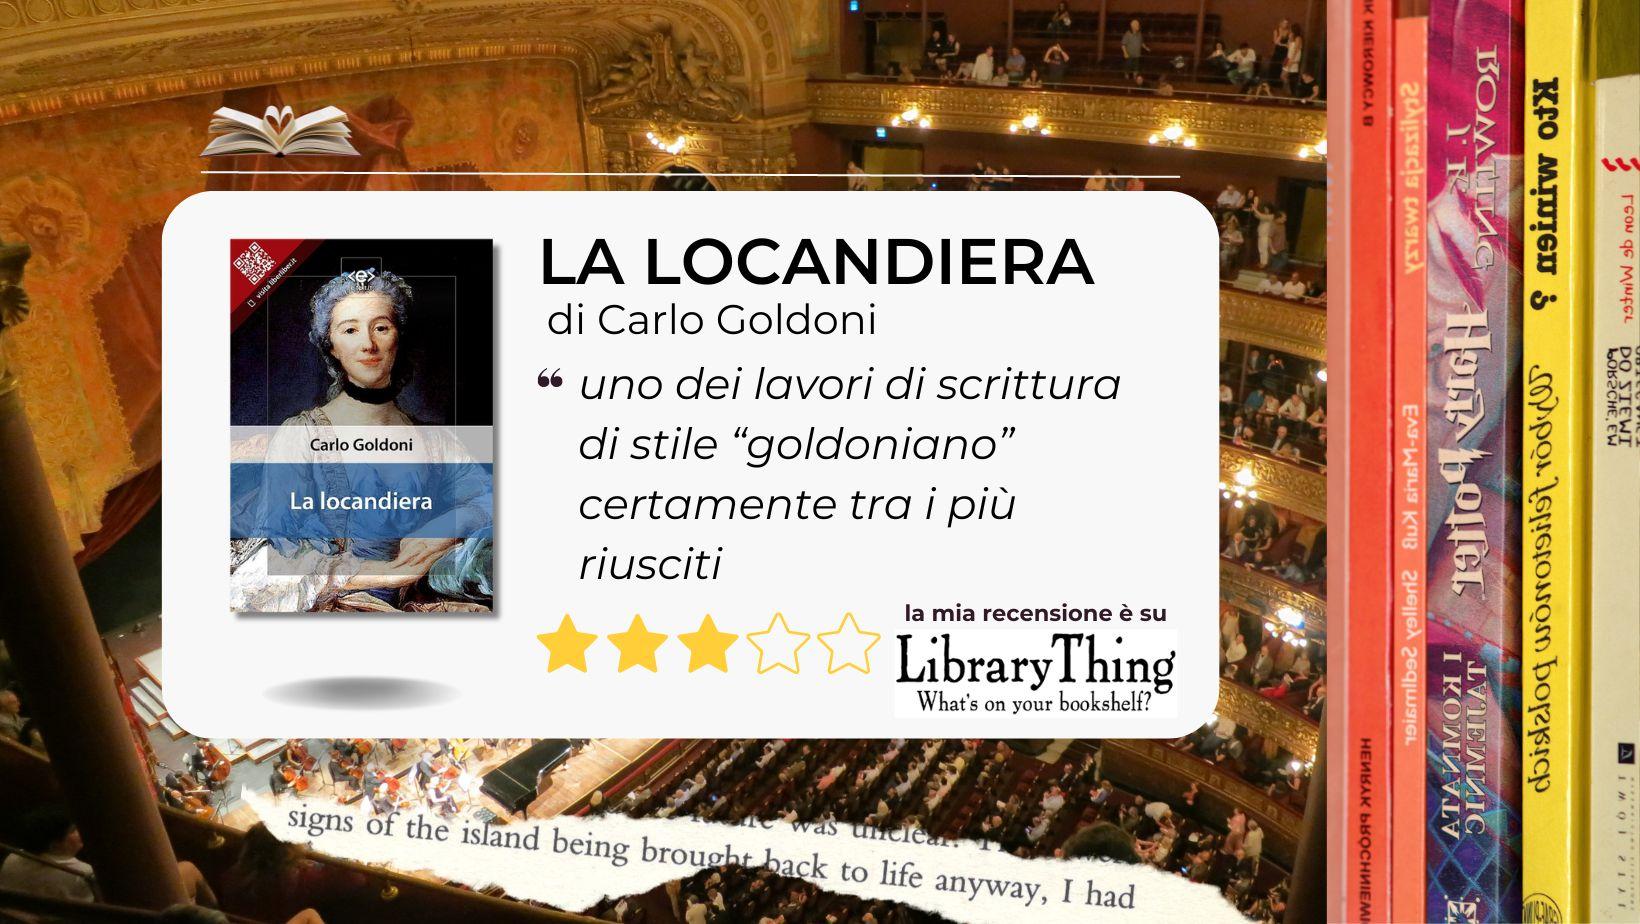 Andare a teatro con Goldoni: La locandiera. Dal cartellone veneziano del 1752 con ironia pungente